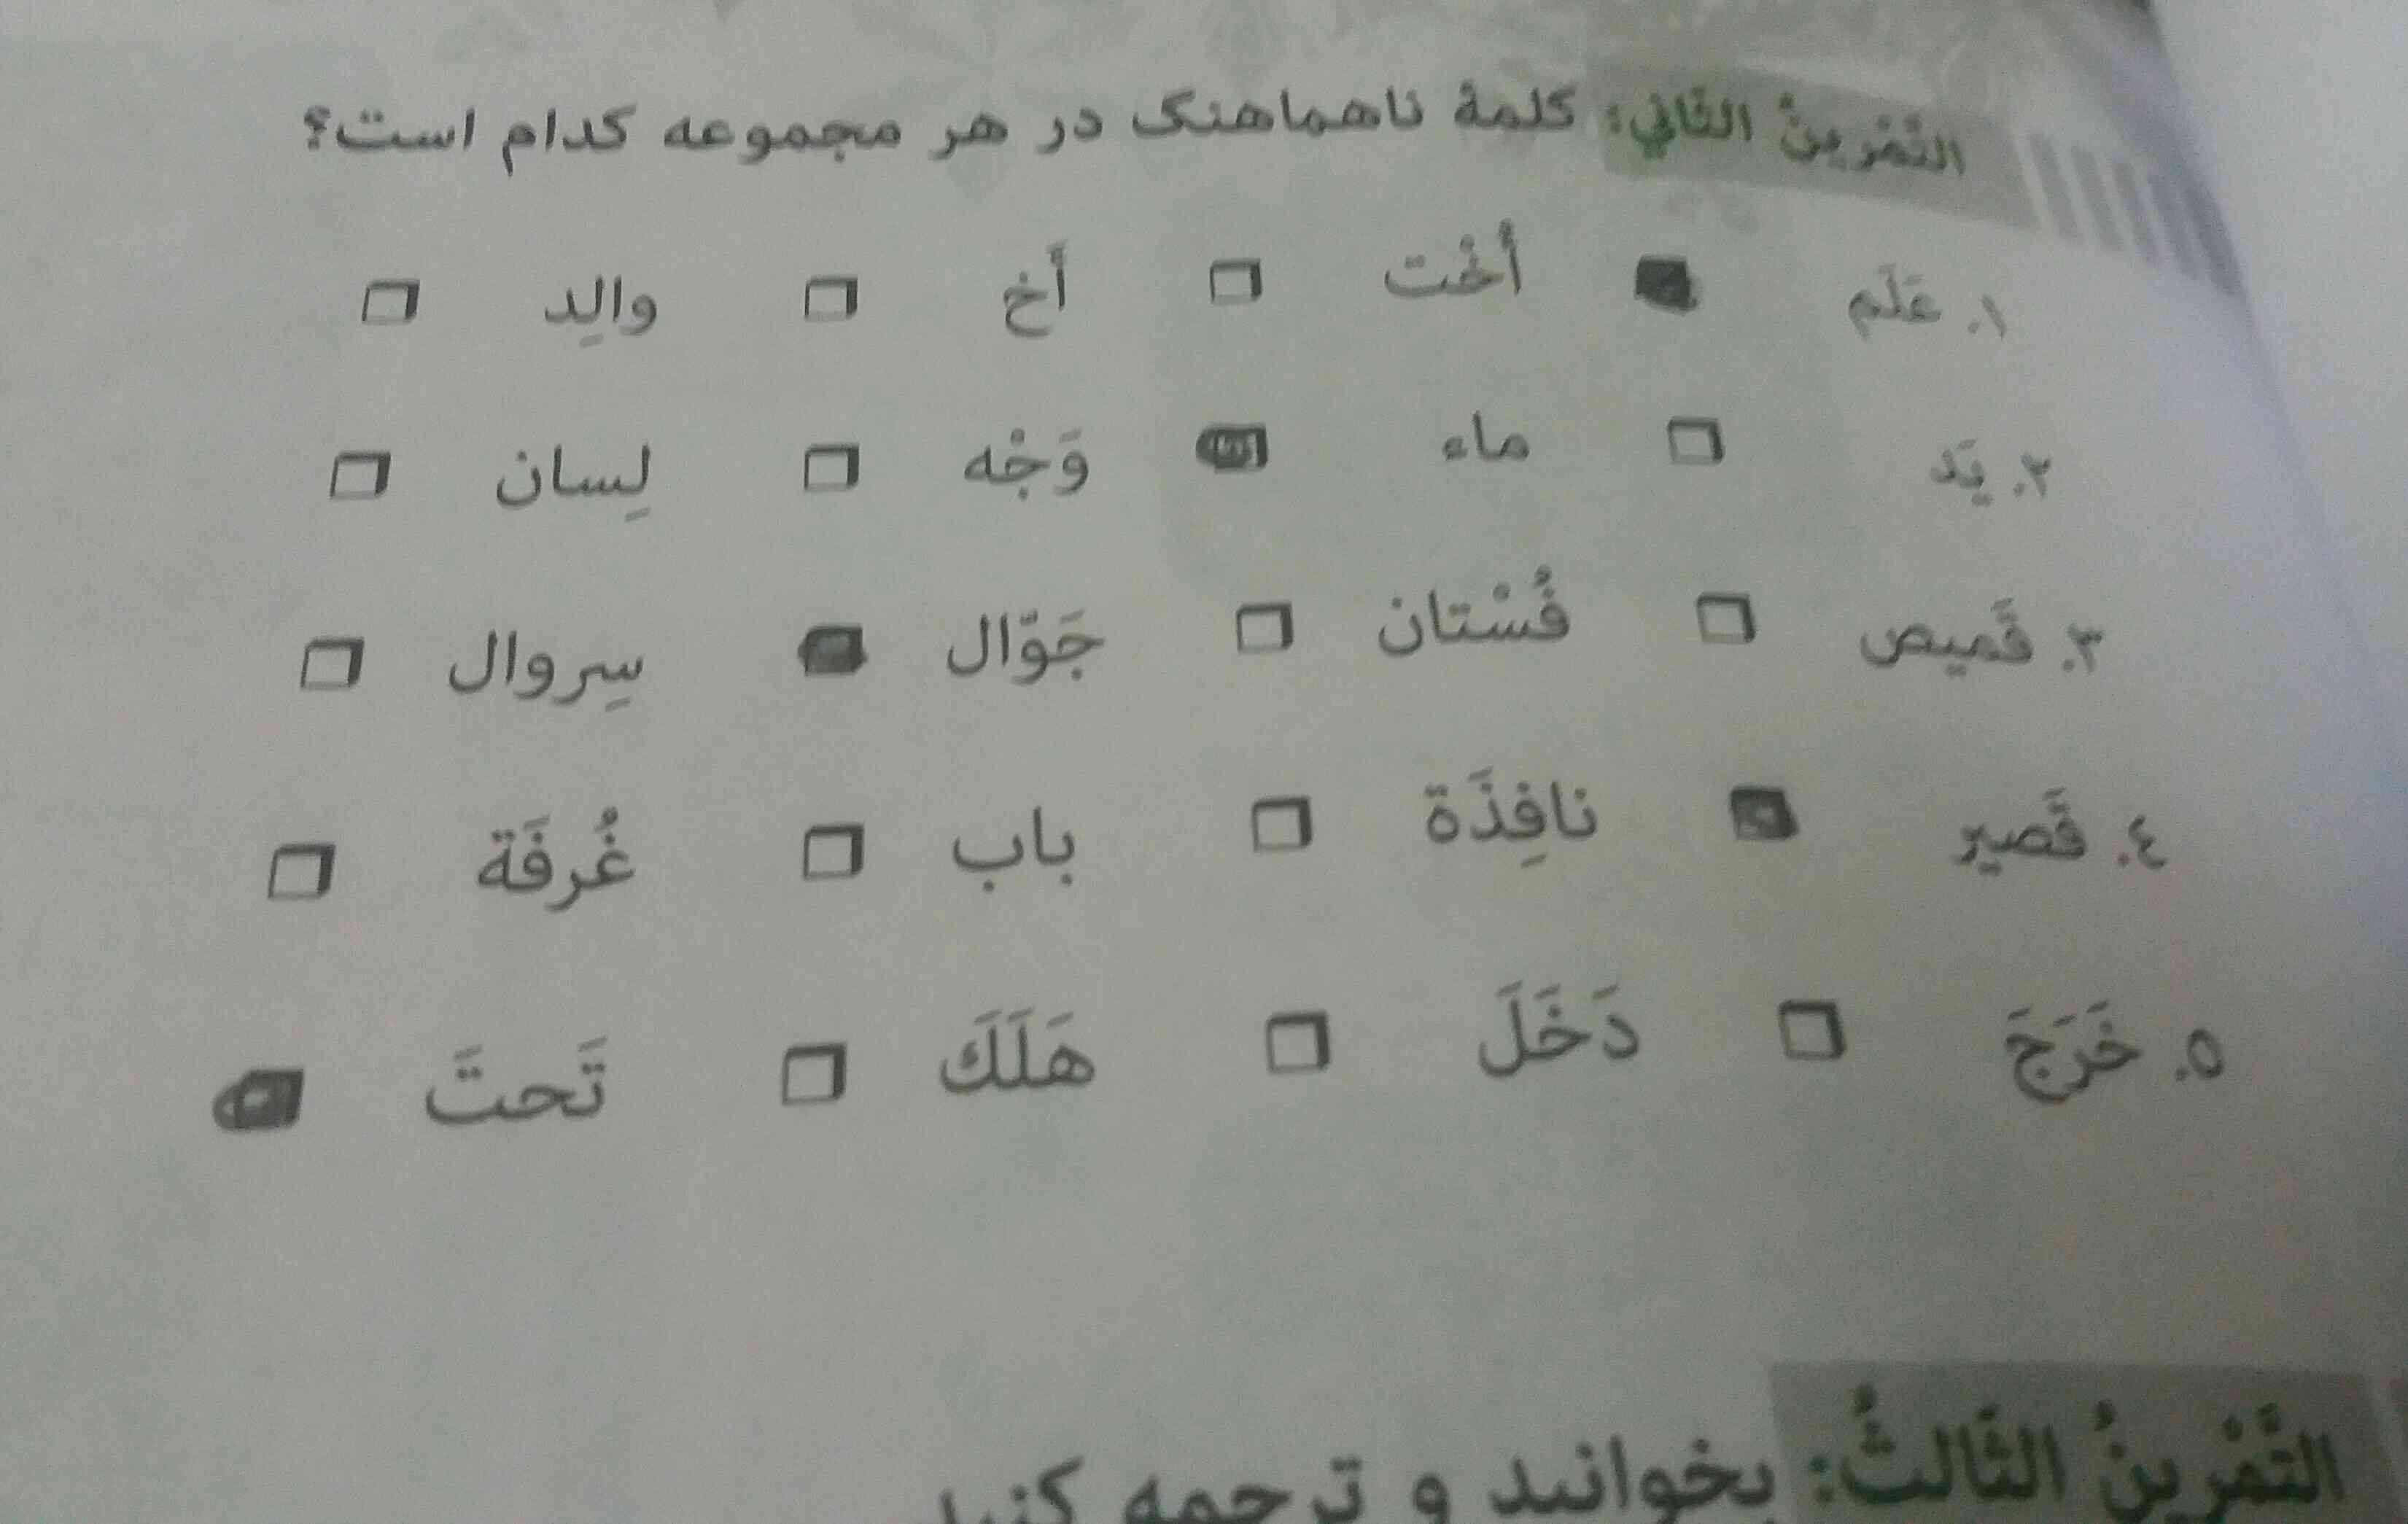 کتاب عربی لطفا الدرس السادس ص۵۱ التمرین الثانی ضمیر ها شا مشخص کنید لطقا هرچه زود تر اگه هم میشود امشی جوابش را بدهید